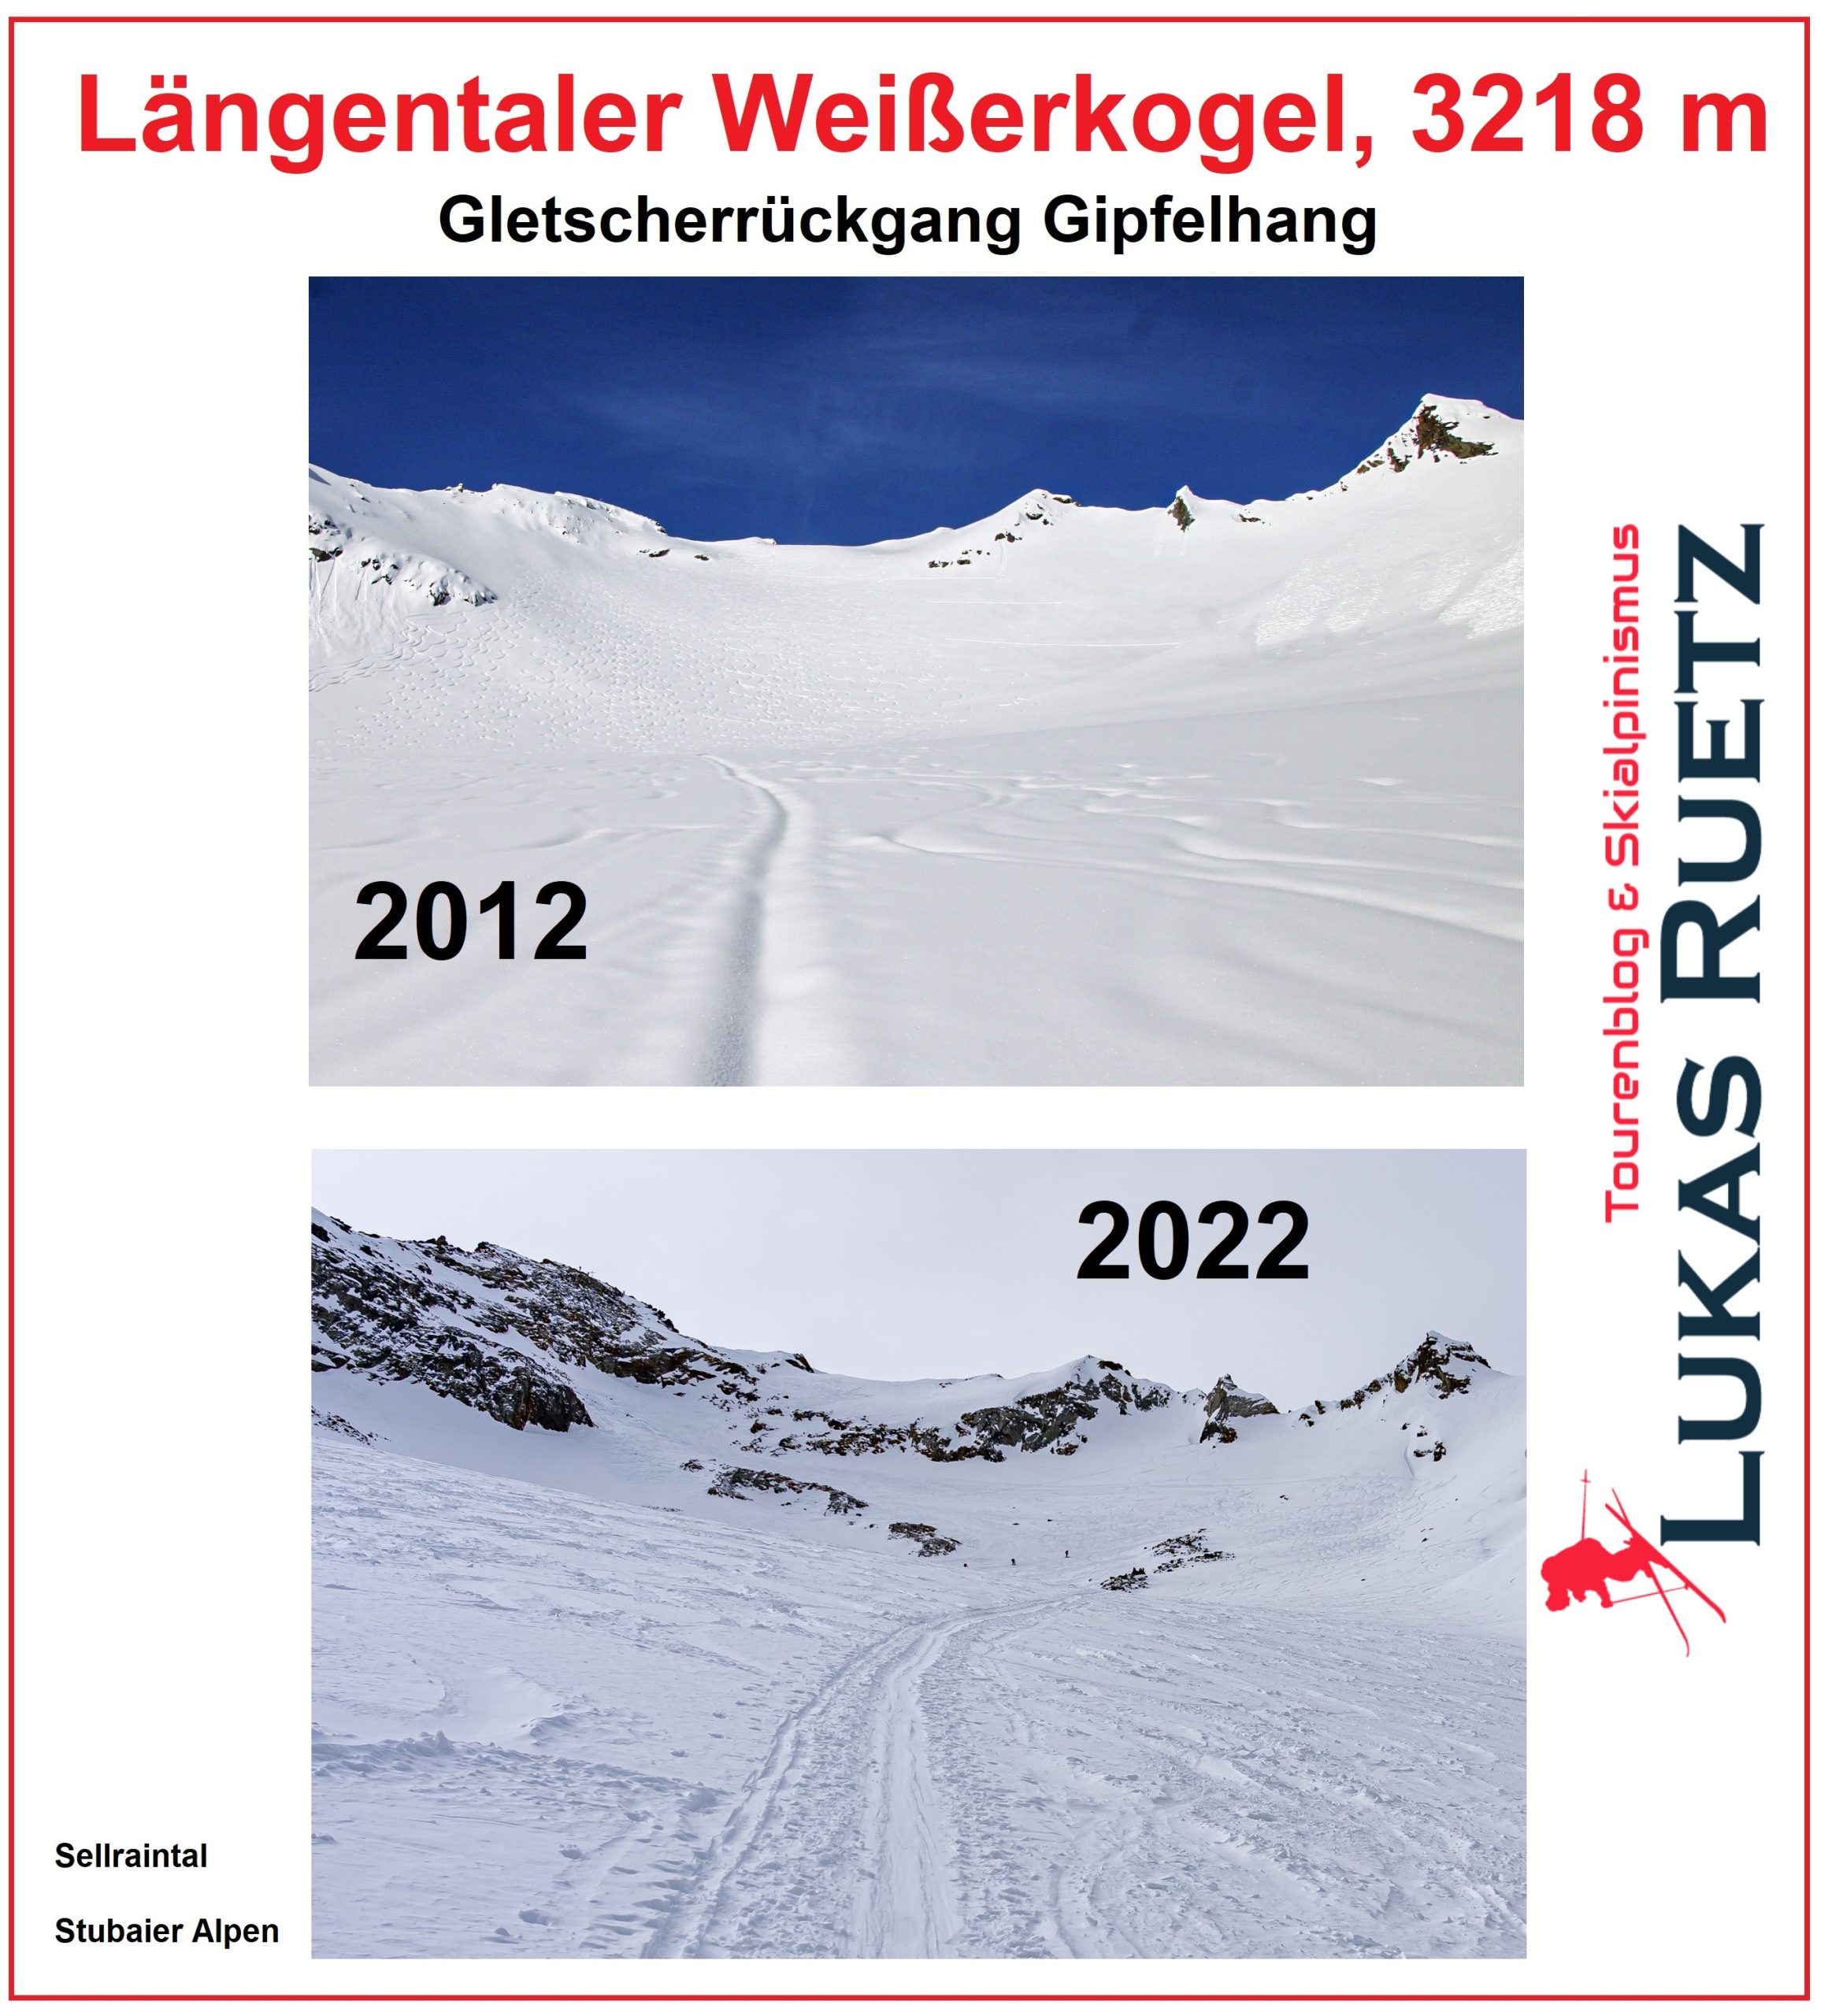 Gletscherrückgang Längentaler Weißerkogel, 3218m, Gipfelhang 2012 - 2022 